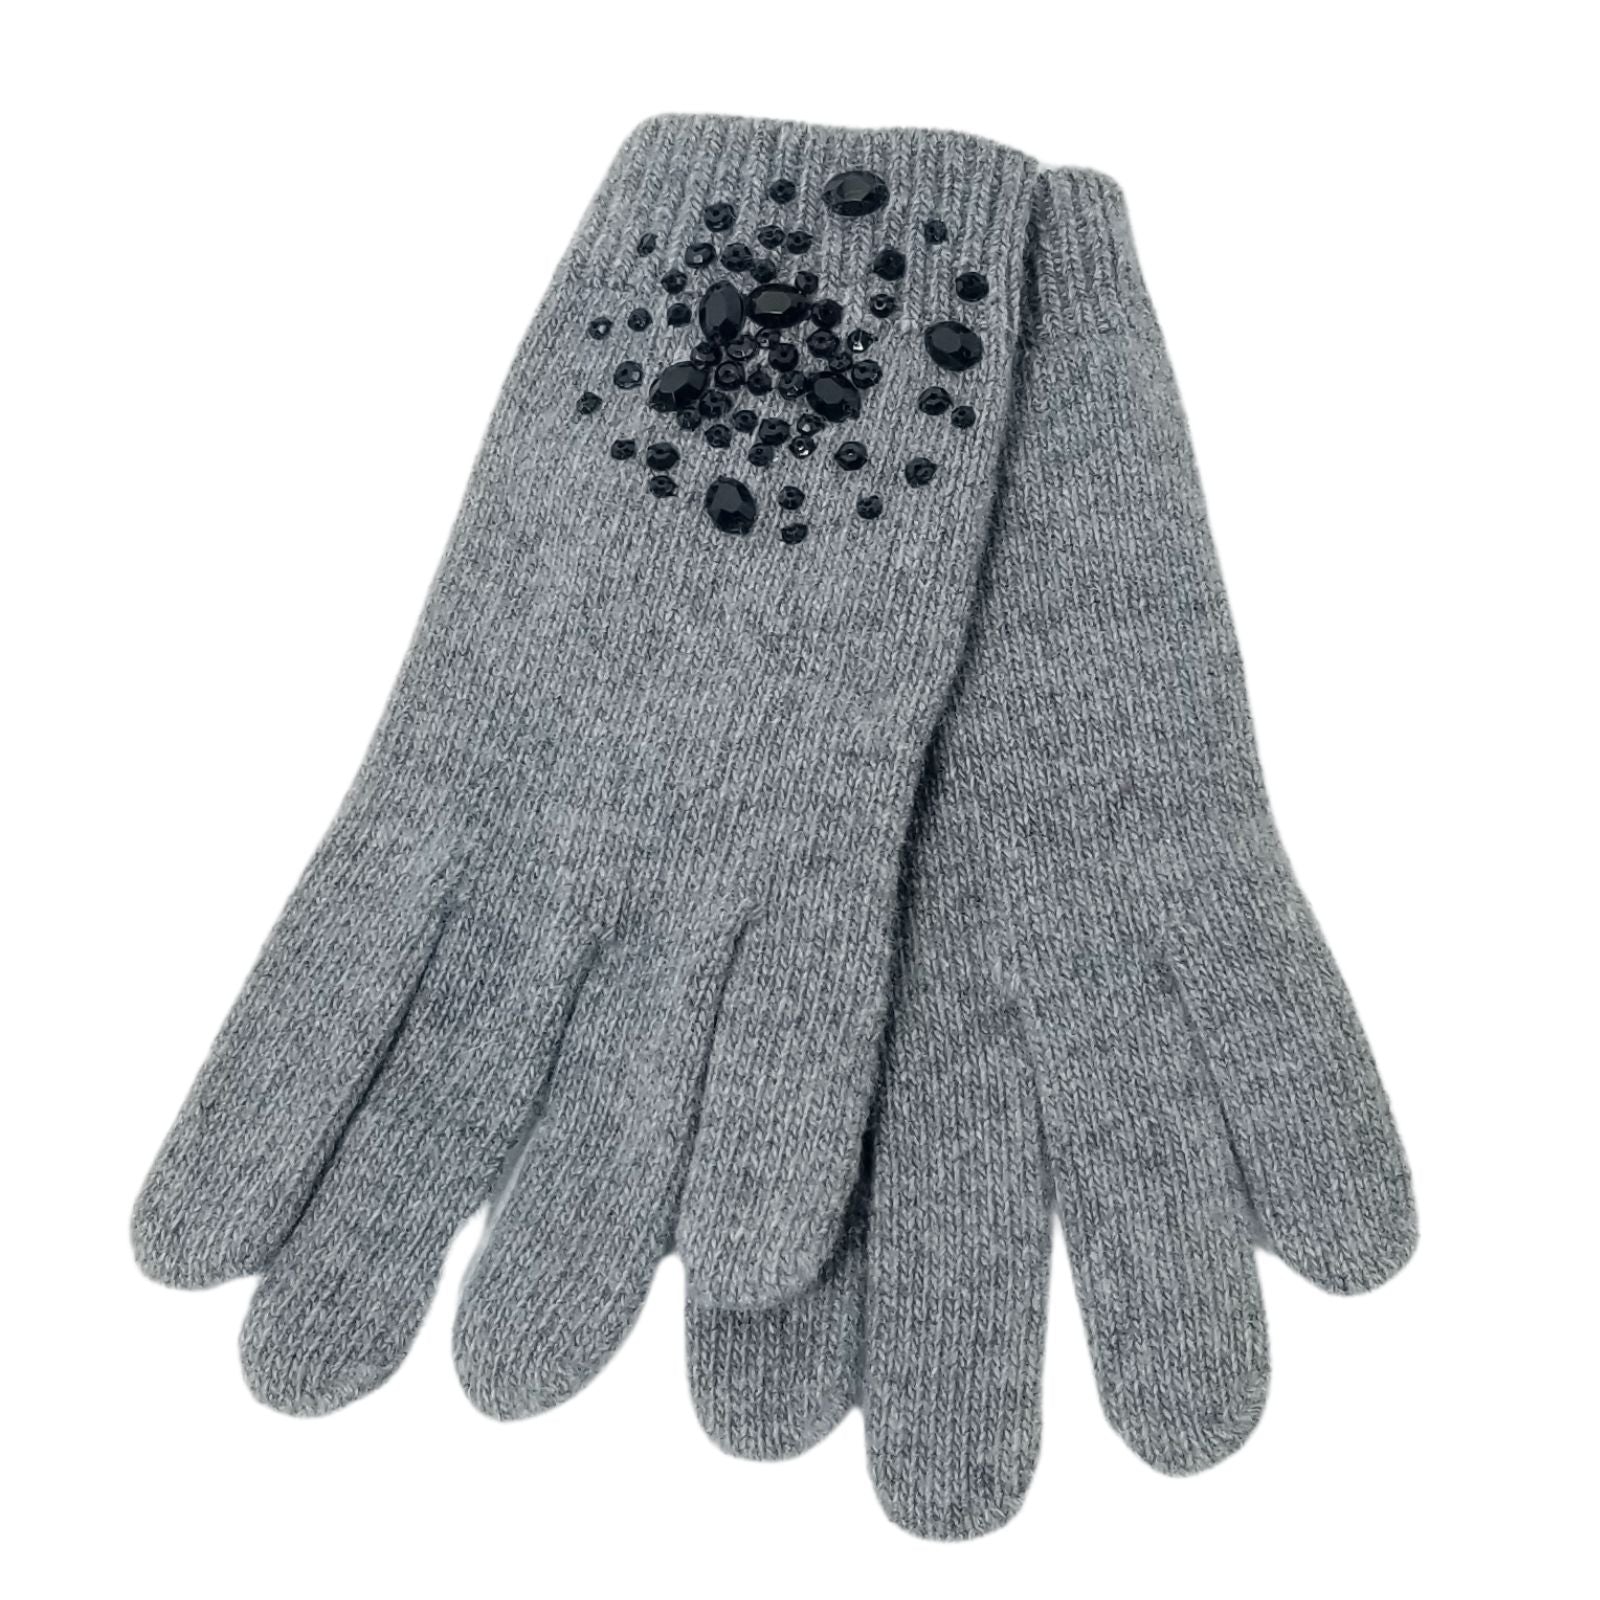 Cashmere glove Medium Heather  Grey with black crystals